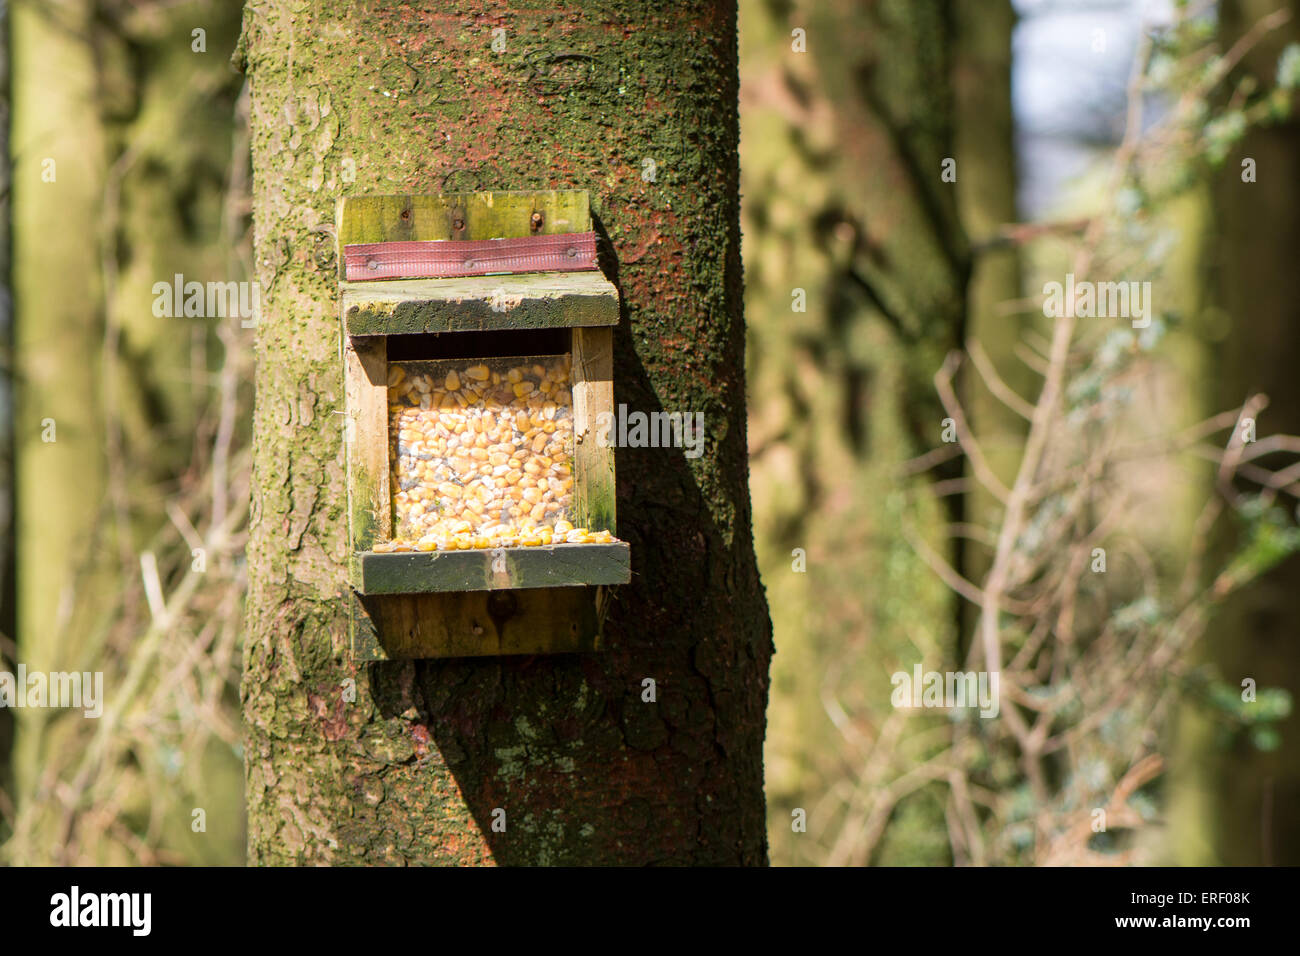 Alimentatore di scoiattolo con mais in per attirare gli scoiattoli grigi in modo che essi possano essere intrappolati in una zona con gli scoiattoli rossi. Cumbria, Regno Unito Foto Stock